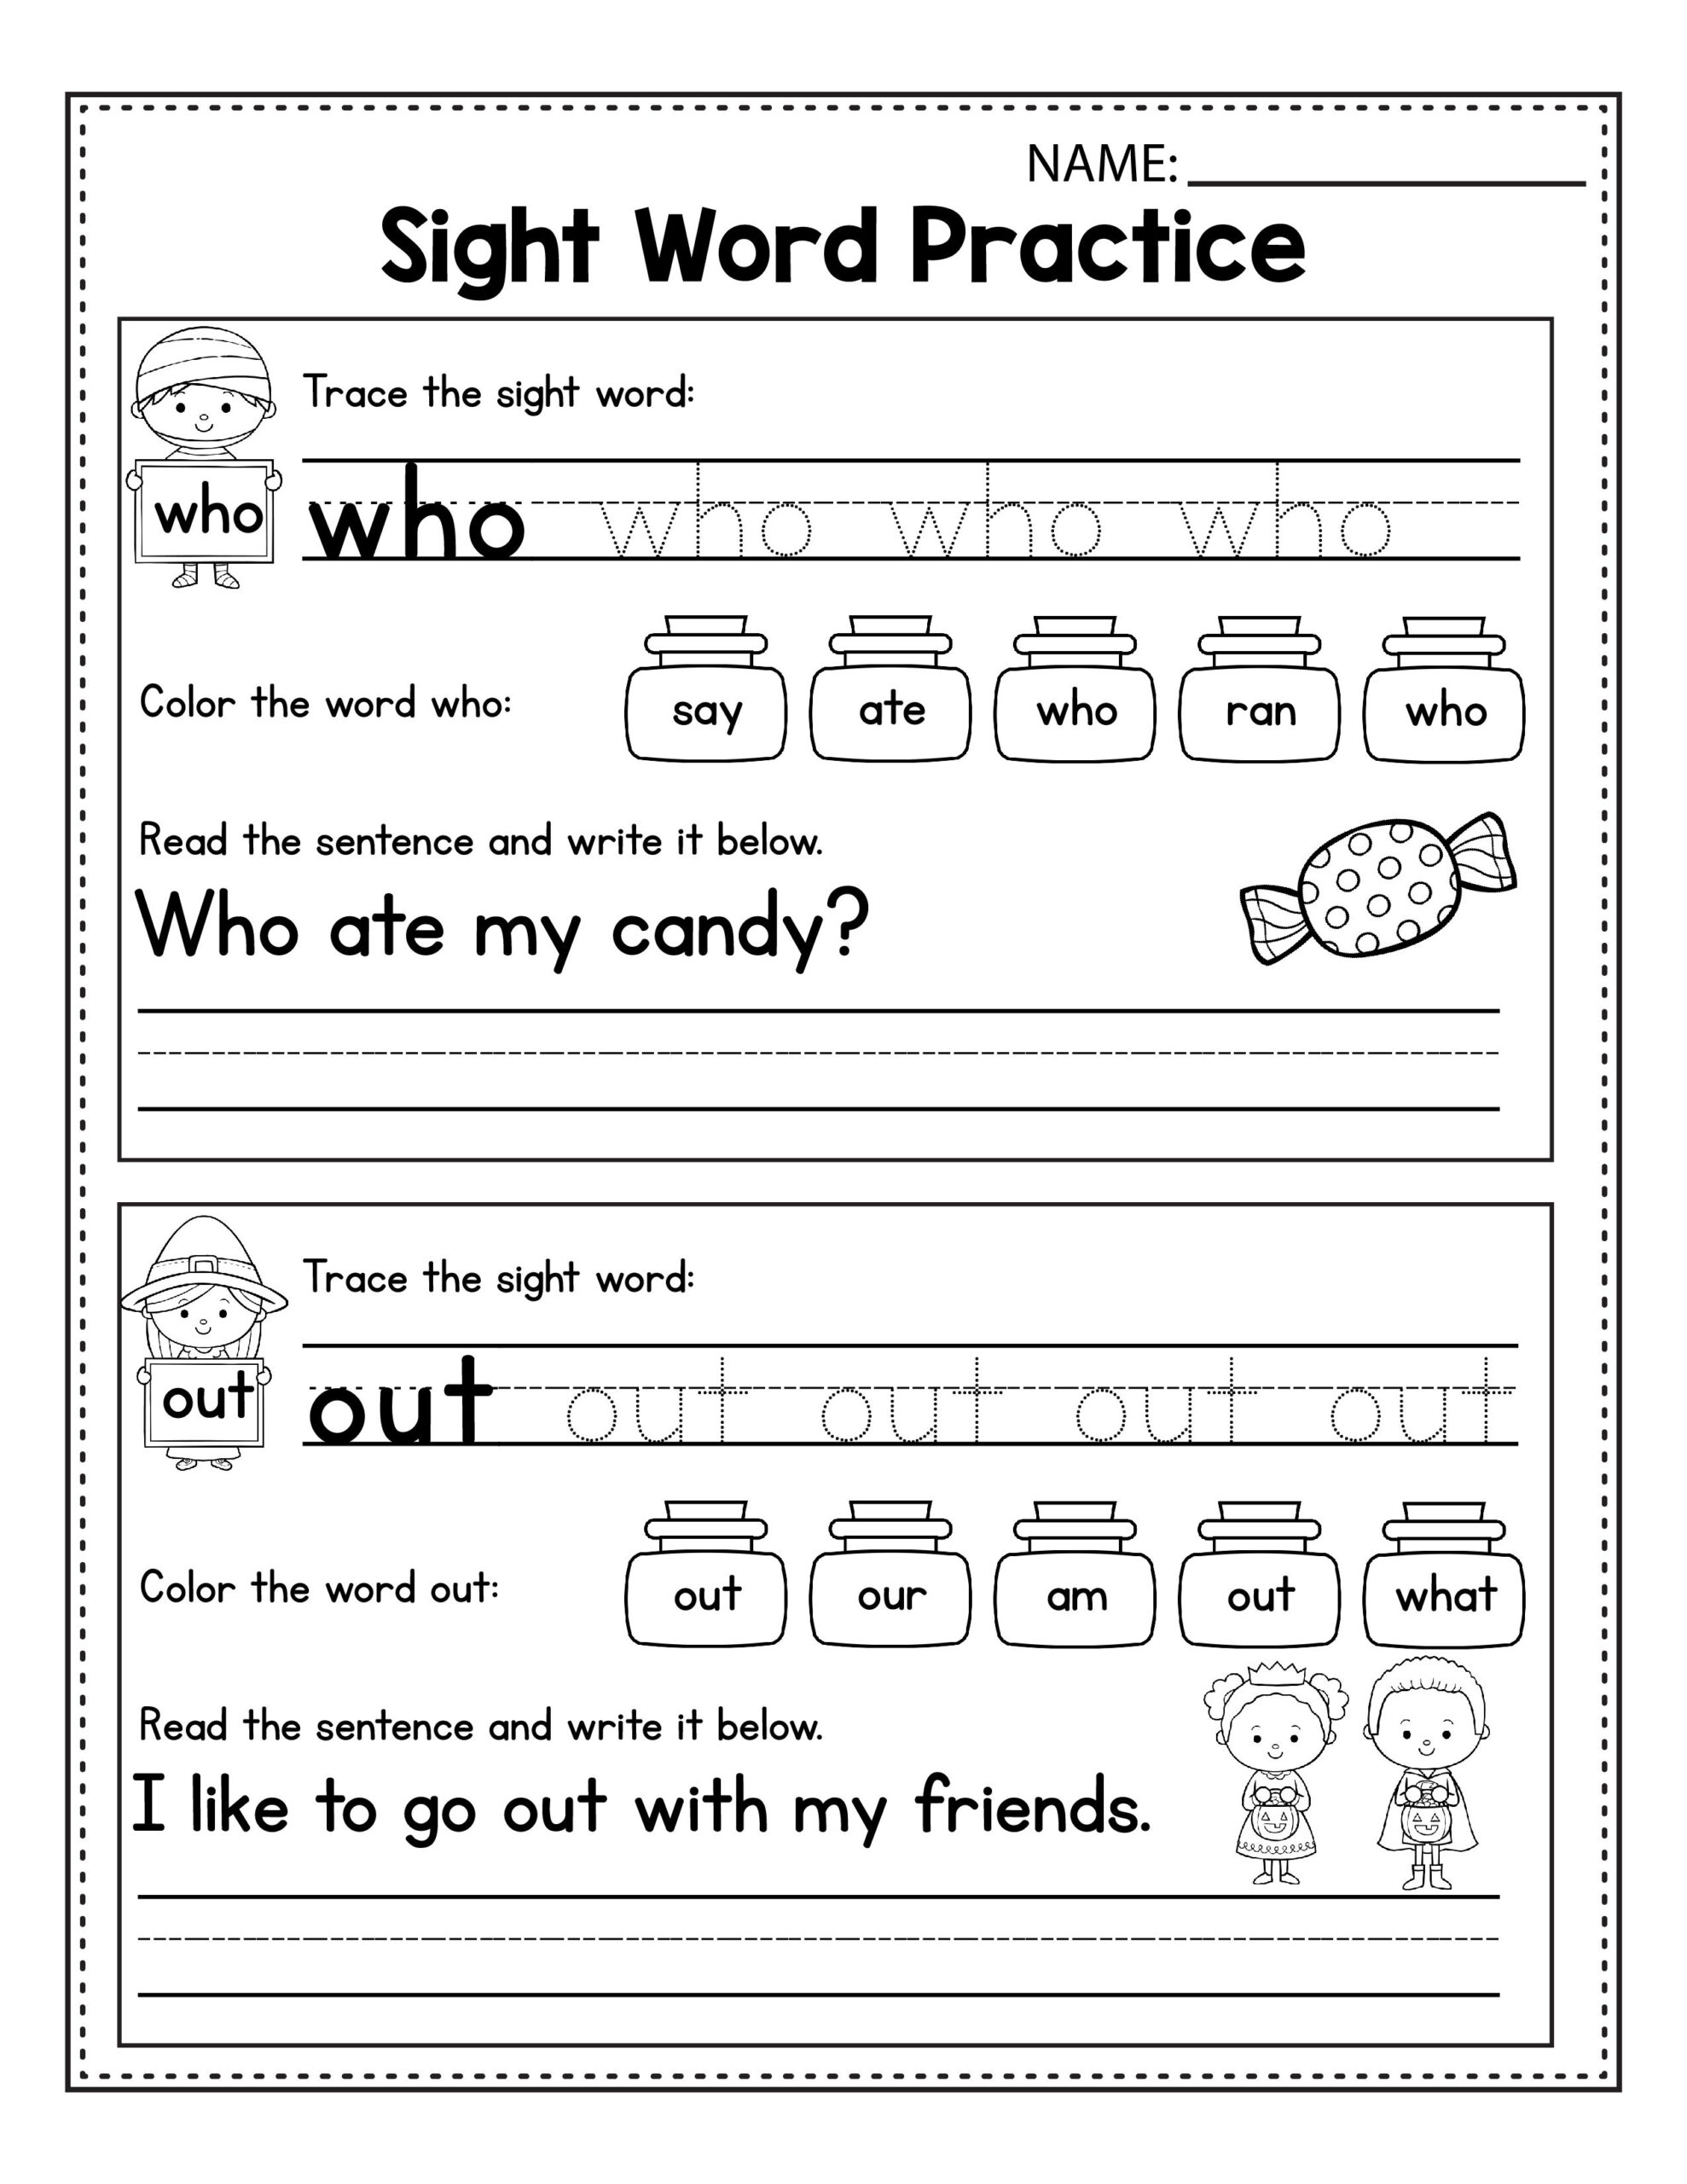 fun-printable-halloween-worksheets-for-5th-graders-numbersworksheet